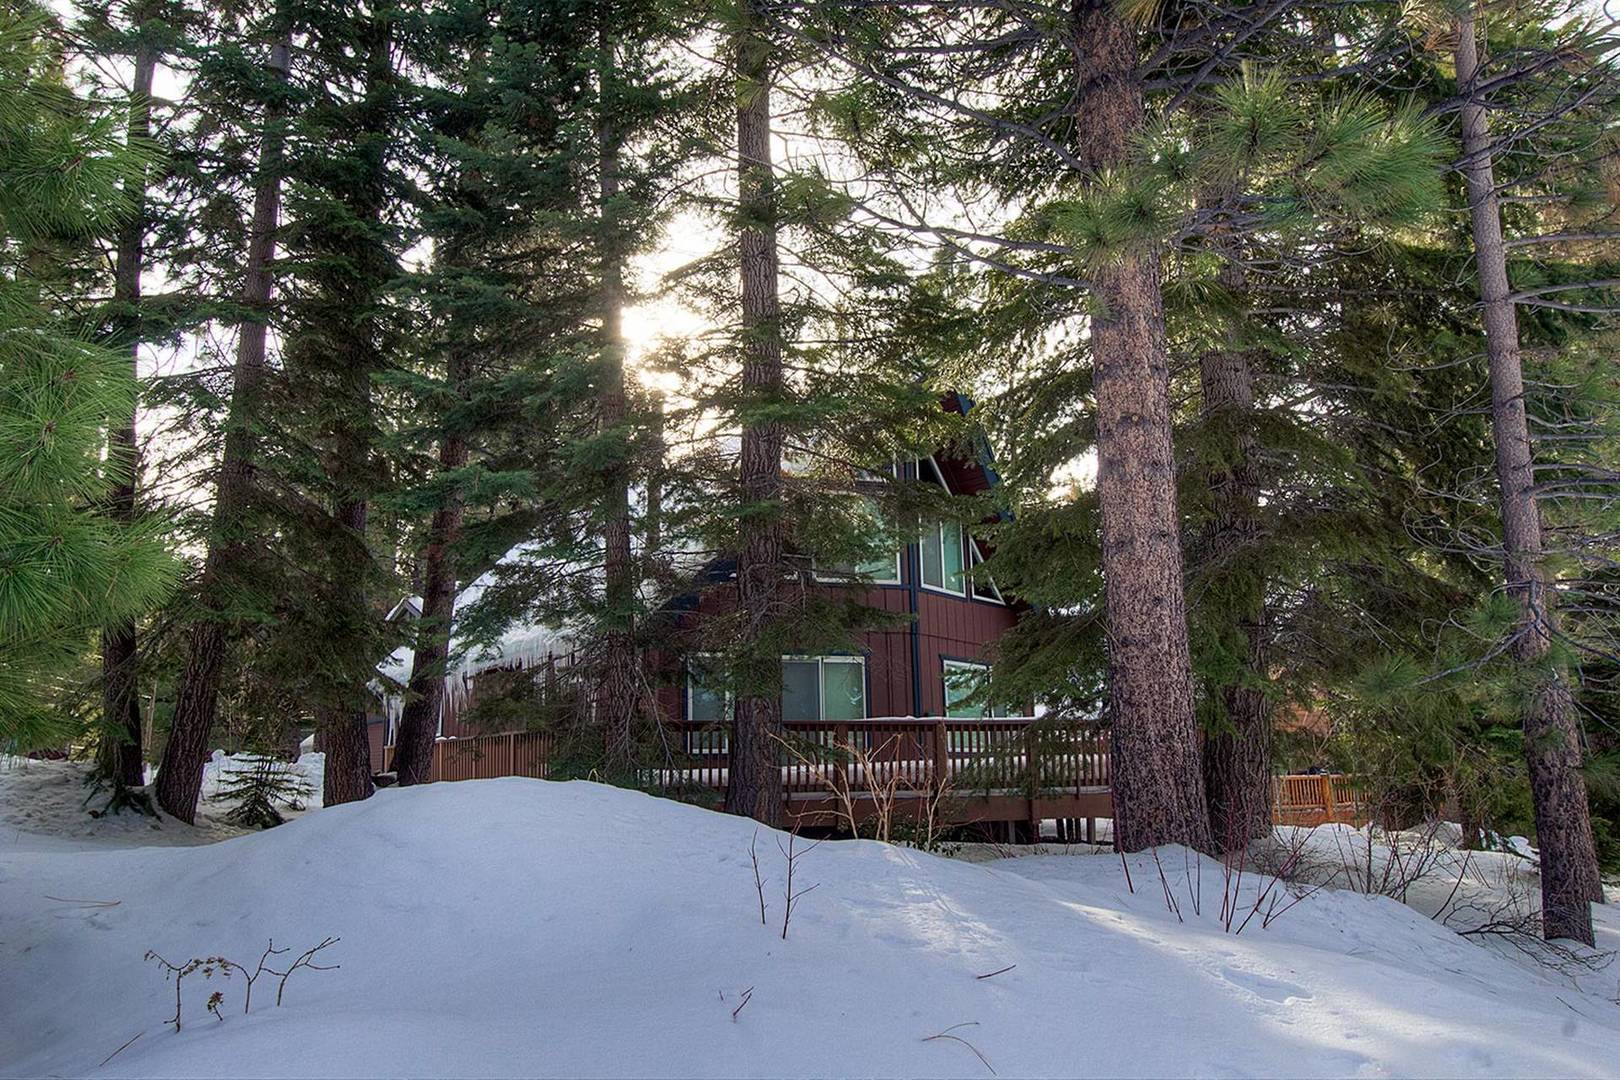 Pine Valley Mountain Lodge: South Lake Tahoe Cabin Rental ...